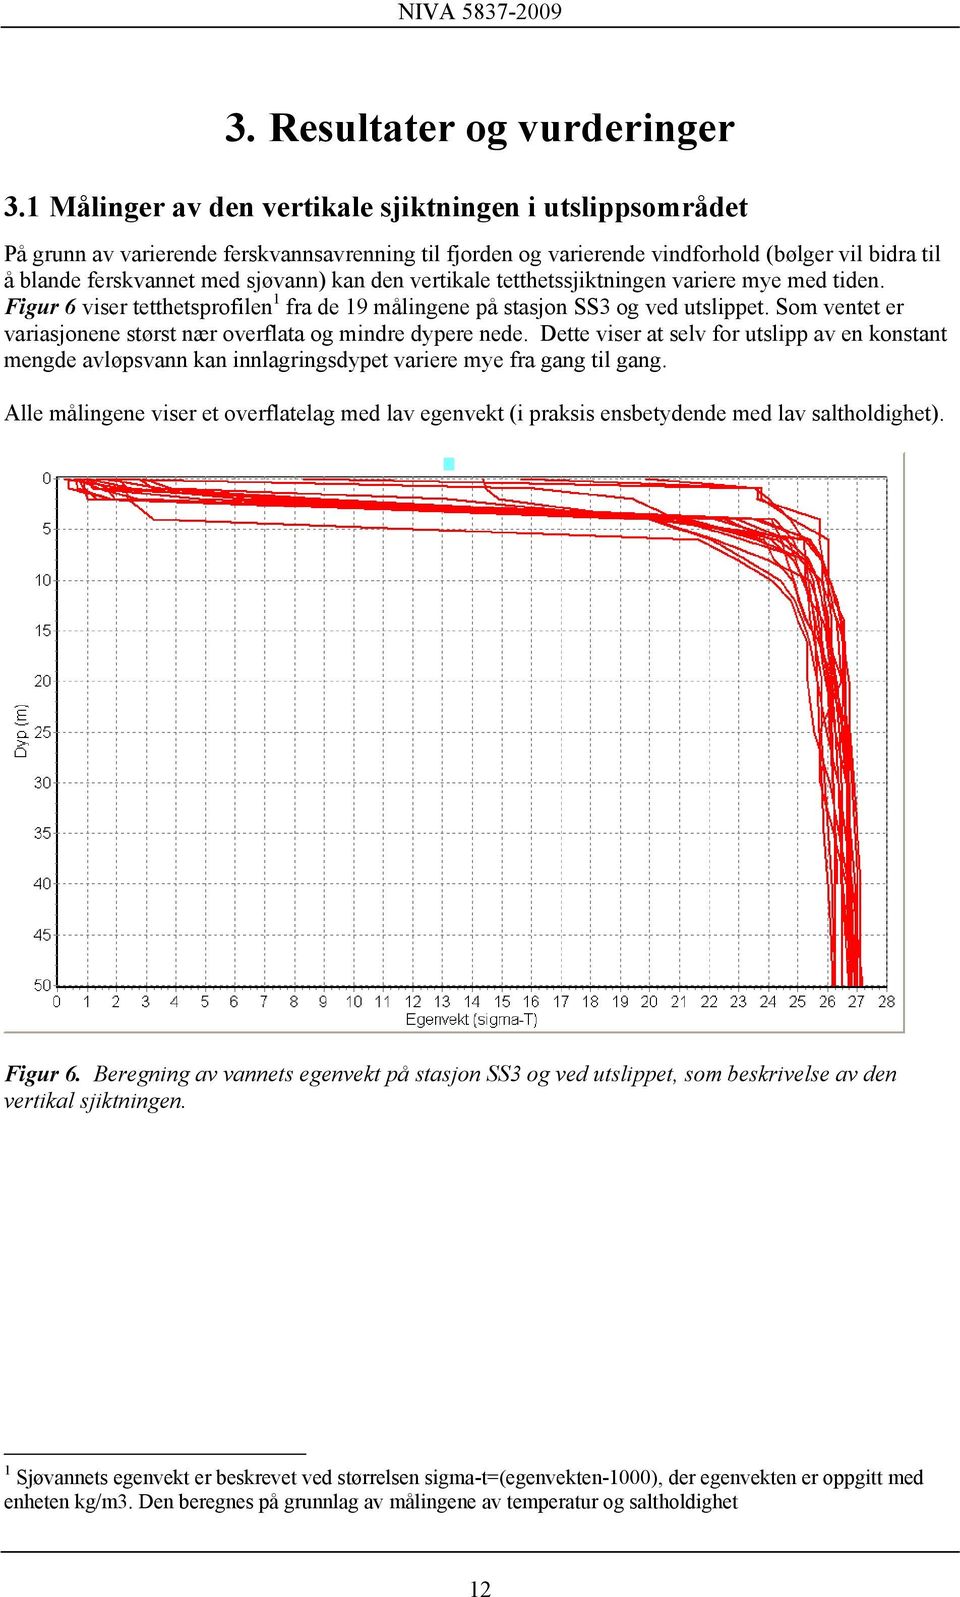 den vertikale tetthetssjiktningen variere mye med tiden. Figur 6 viser tetthetsprofilen 1 fra de 19 målingene på stasjon SS3 og ved utslippet.